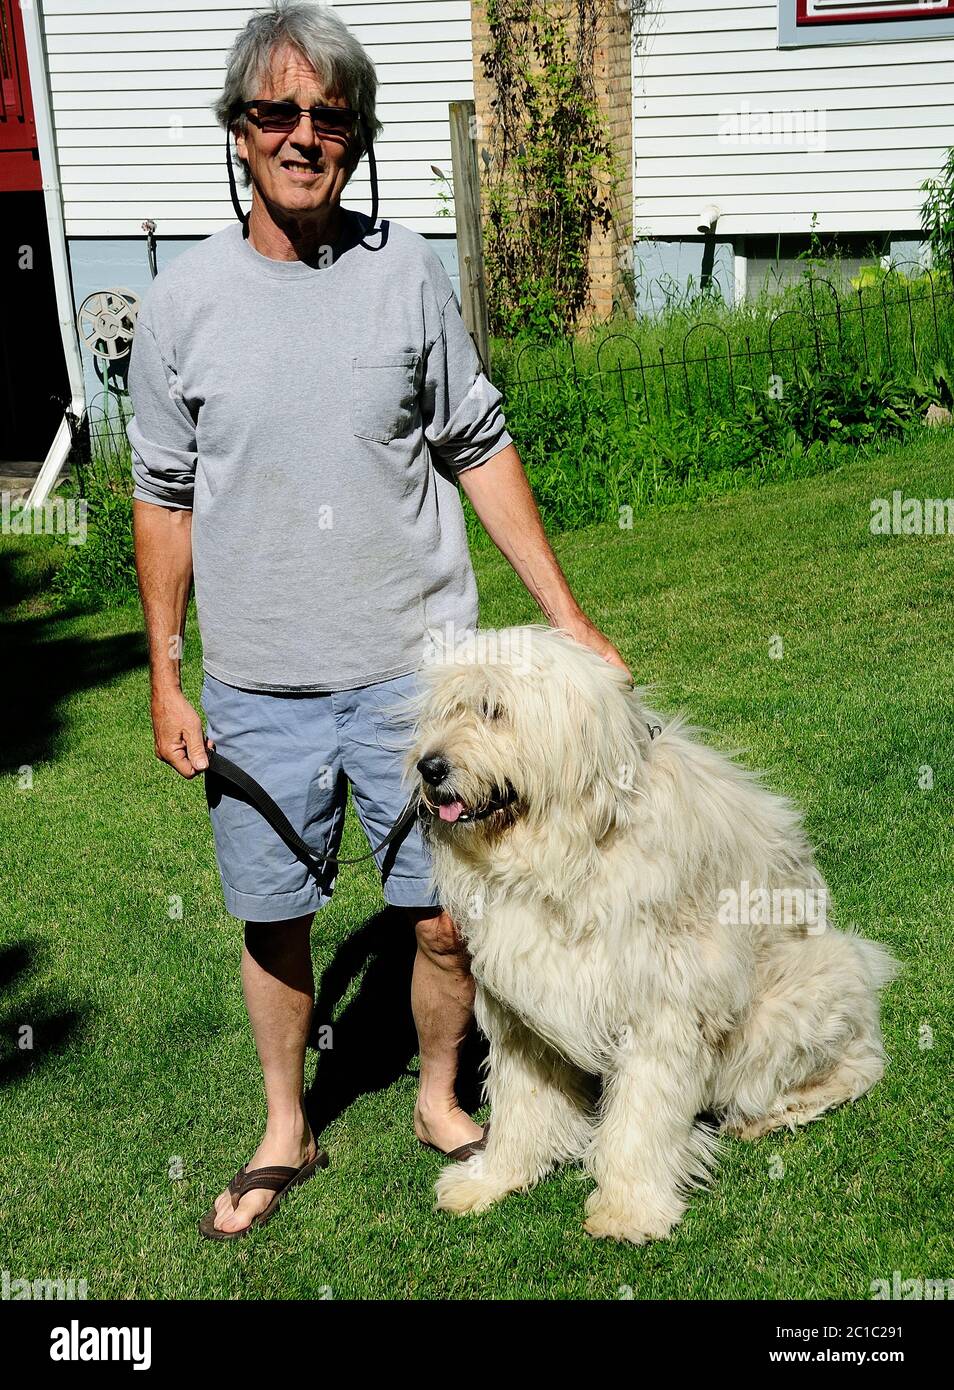 Homme posant dans son arrière-cour avec son chien Chloe qui est partie andalouse Shepard et partie grande Pyranese. Banque D'Images